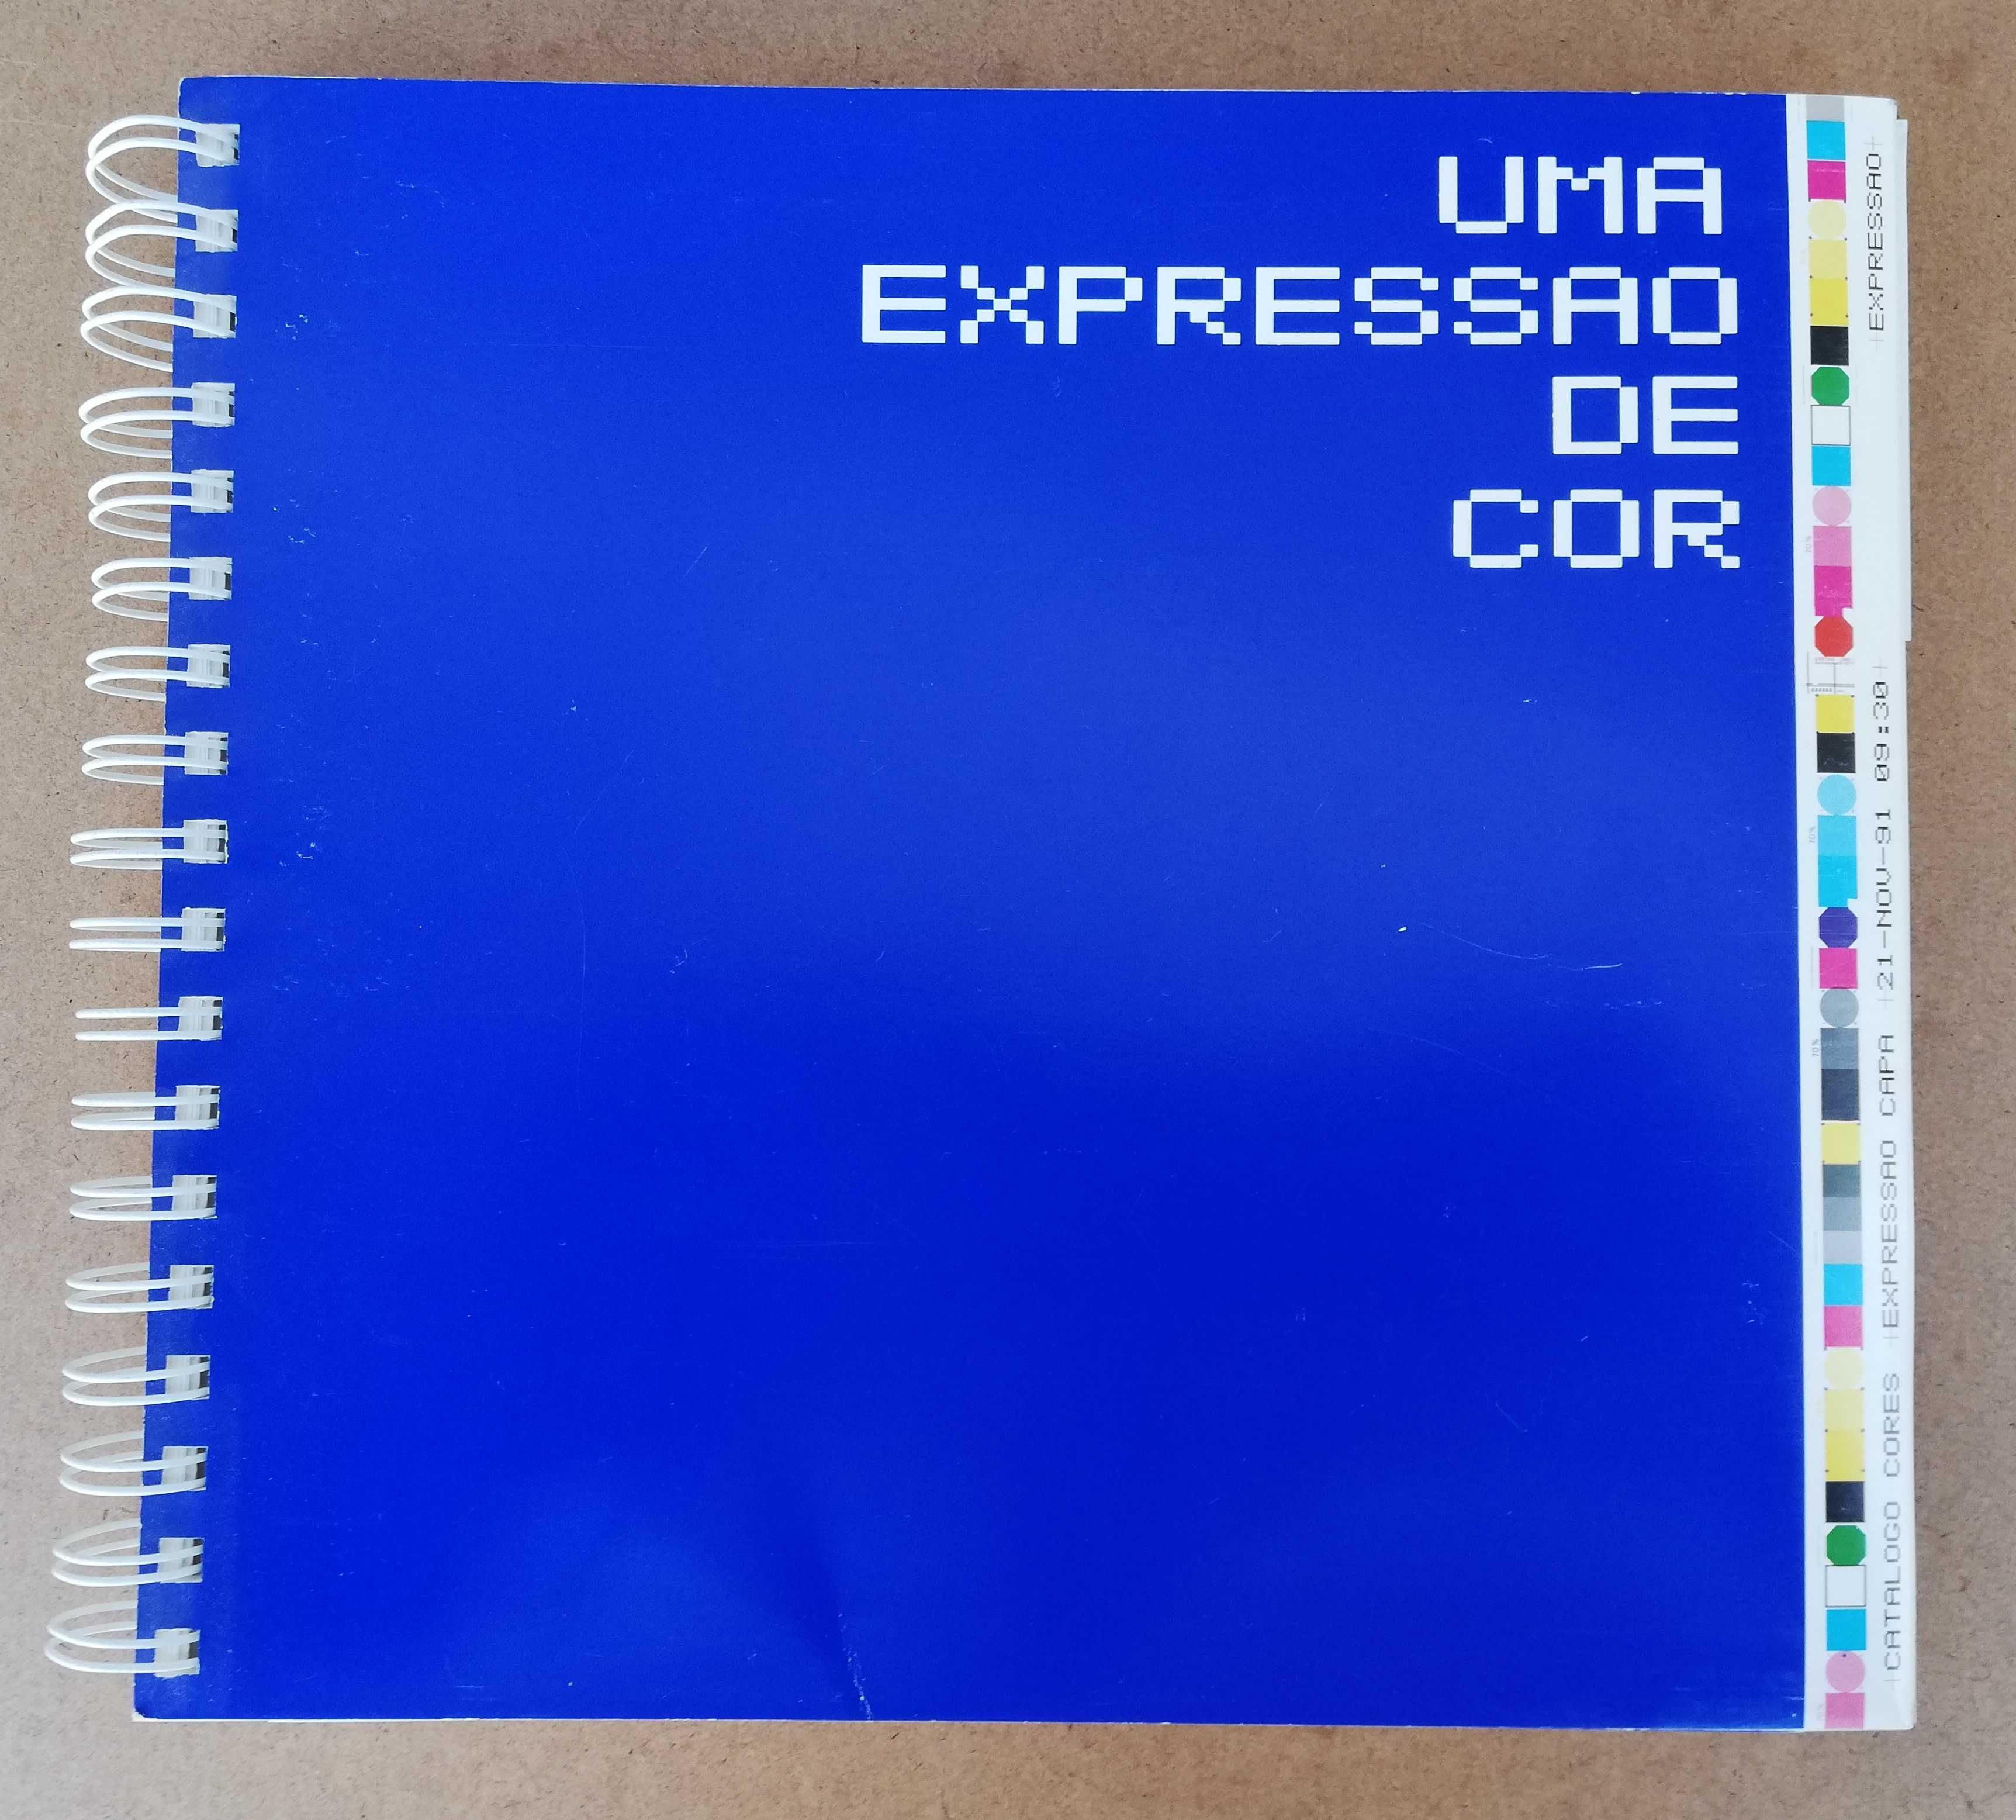 Carta de cores c/ 35 escalas impressa em offset em 3 papéis diferentes